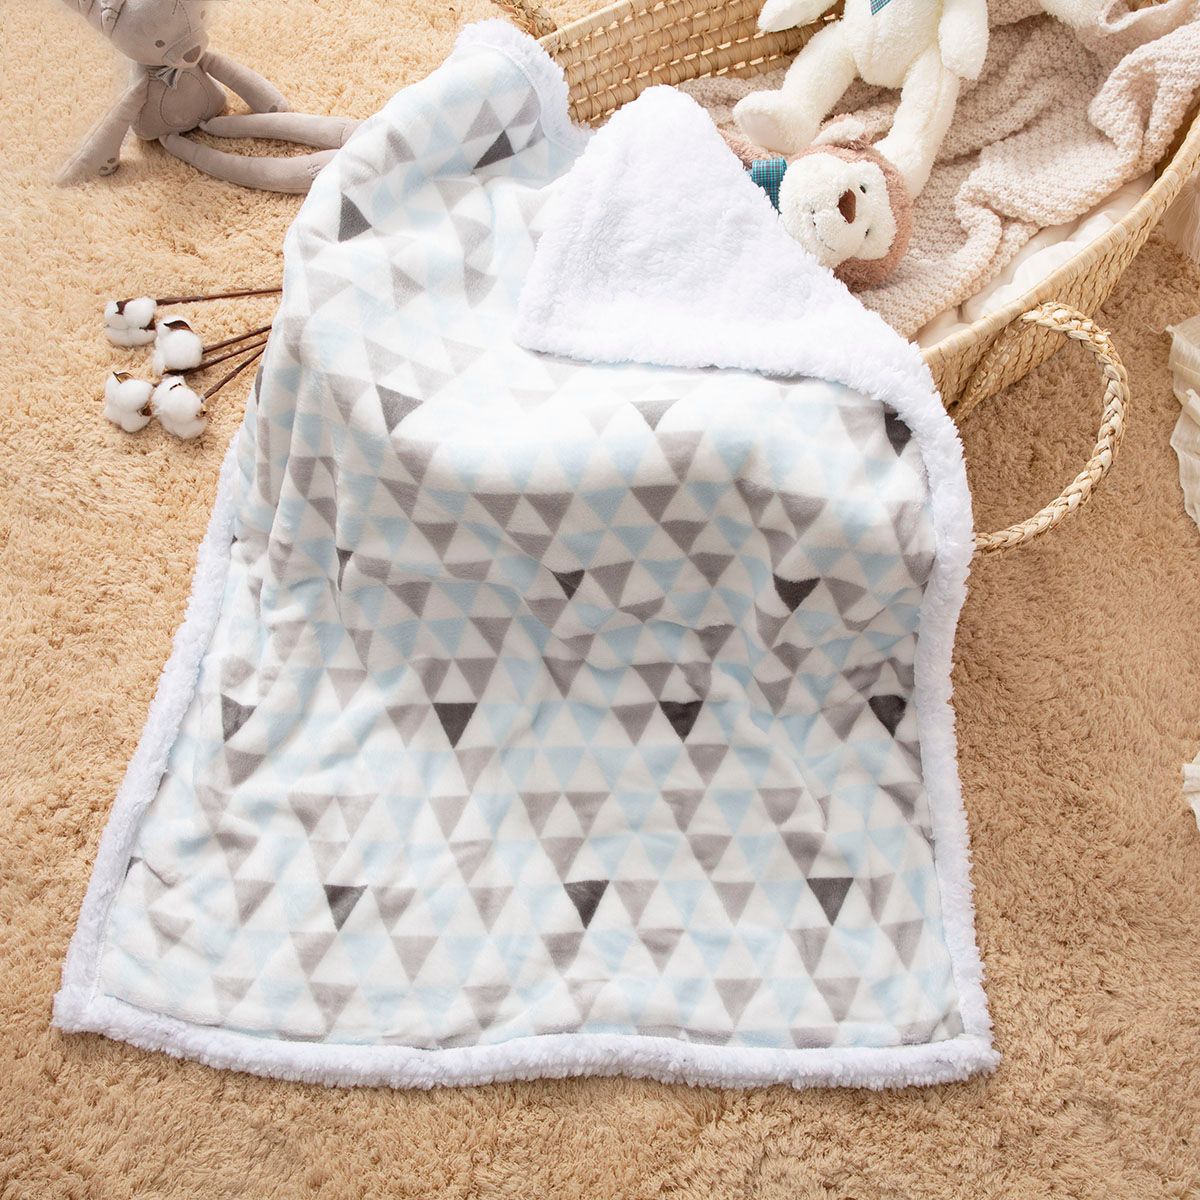 嬰兒保暖毯幾何圖案柔軟可水洗厚毯子被子兒童牀上用品